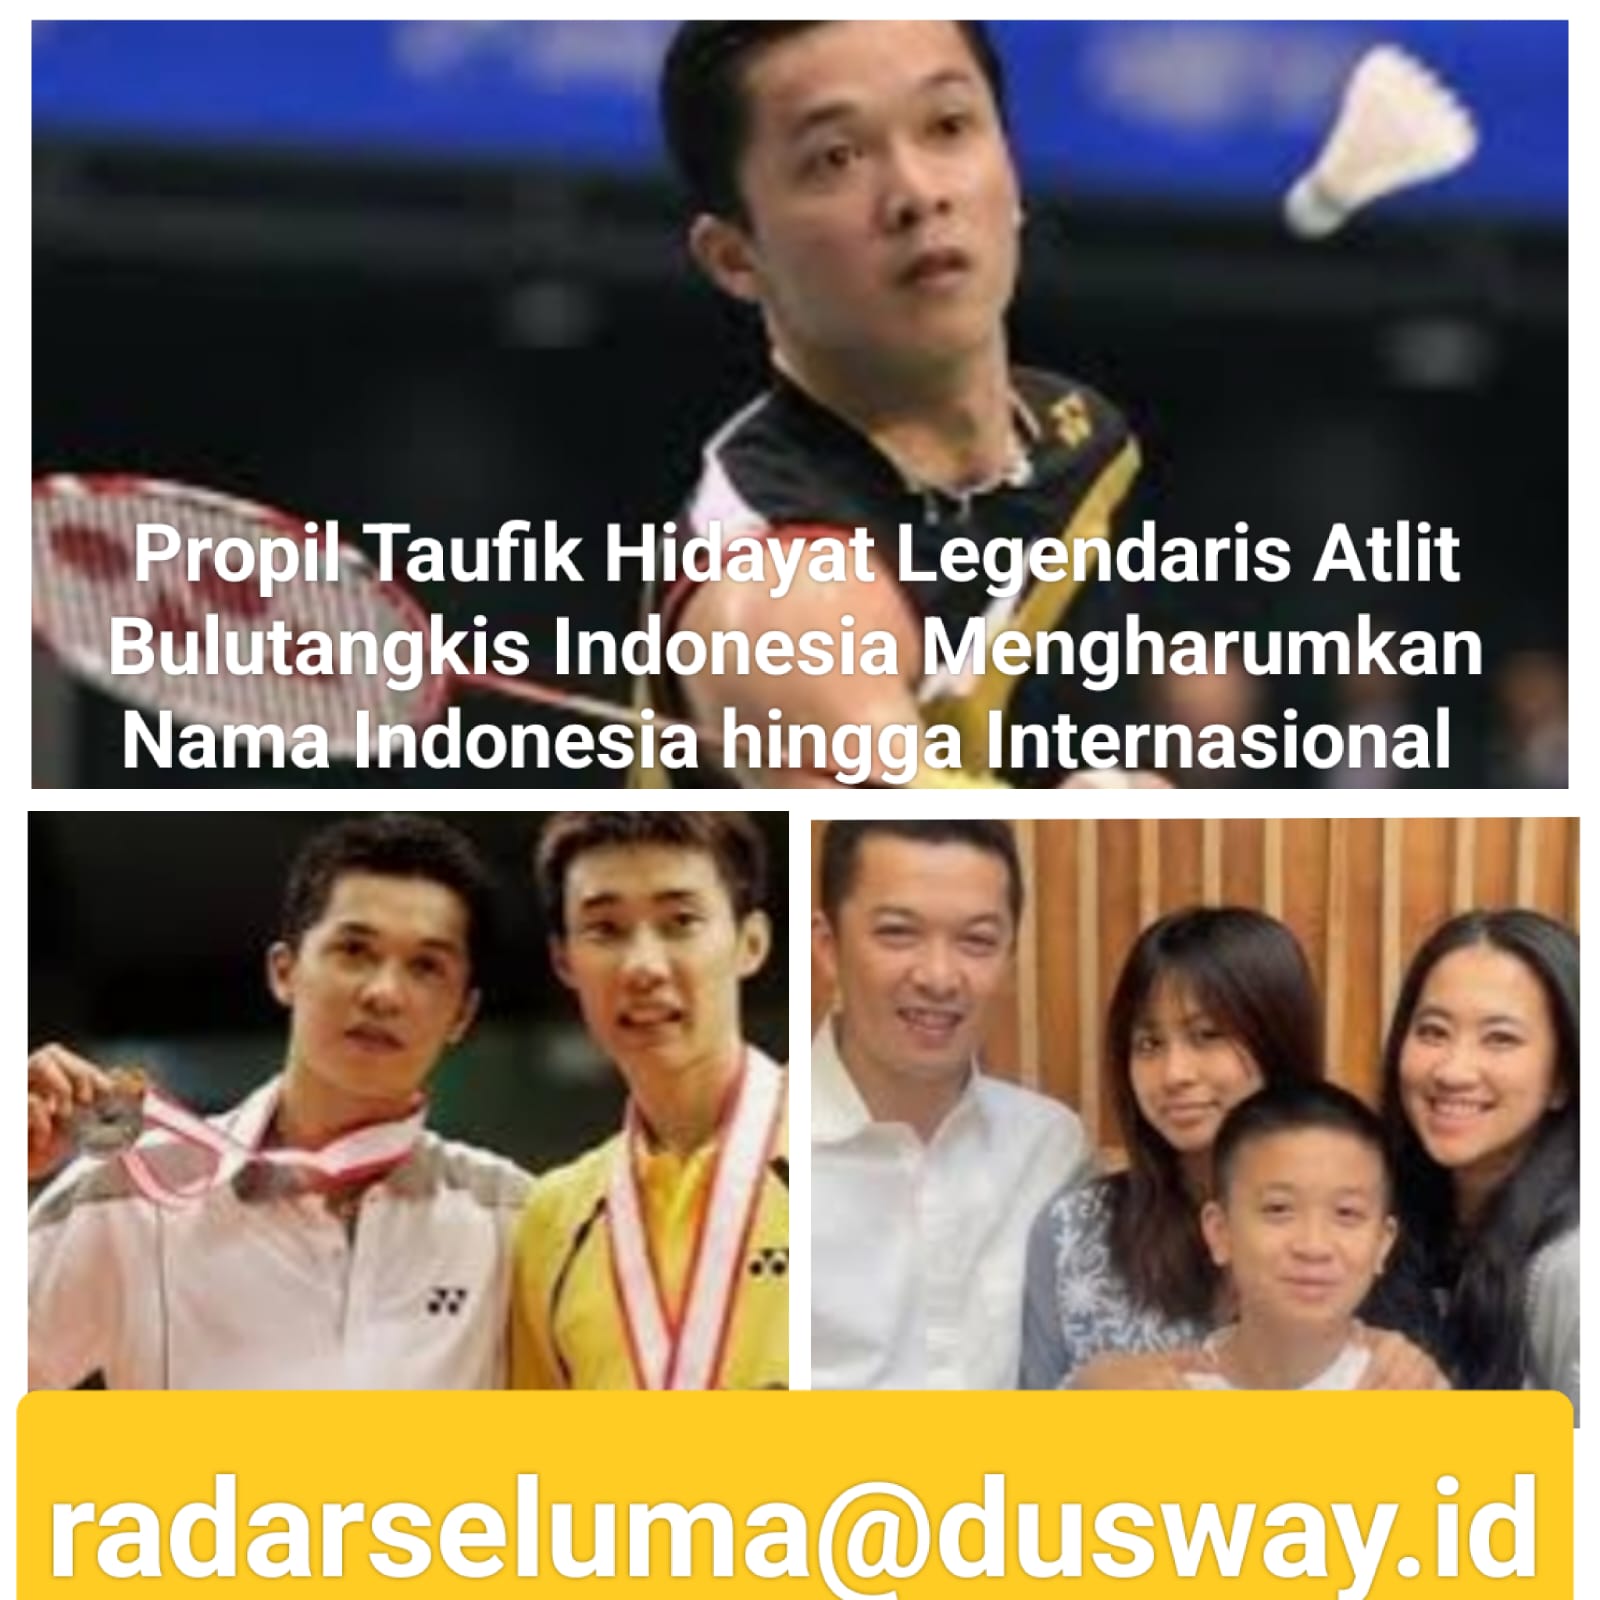 Profil Atlet Bulu Tangkis Legendaris Indonesia Taufik Hidayat 